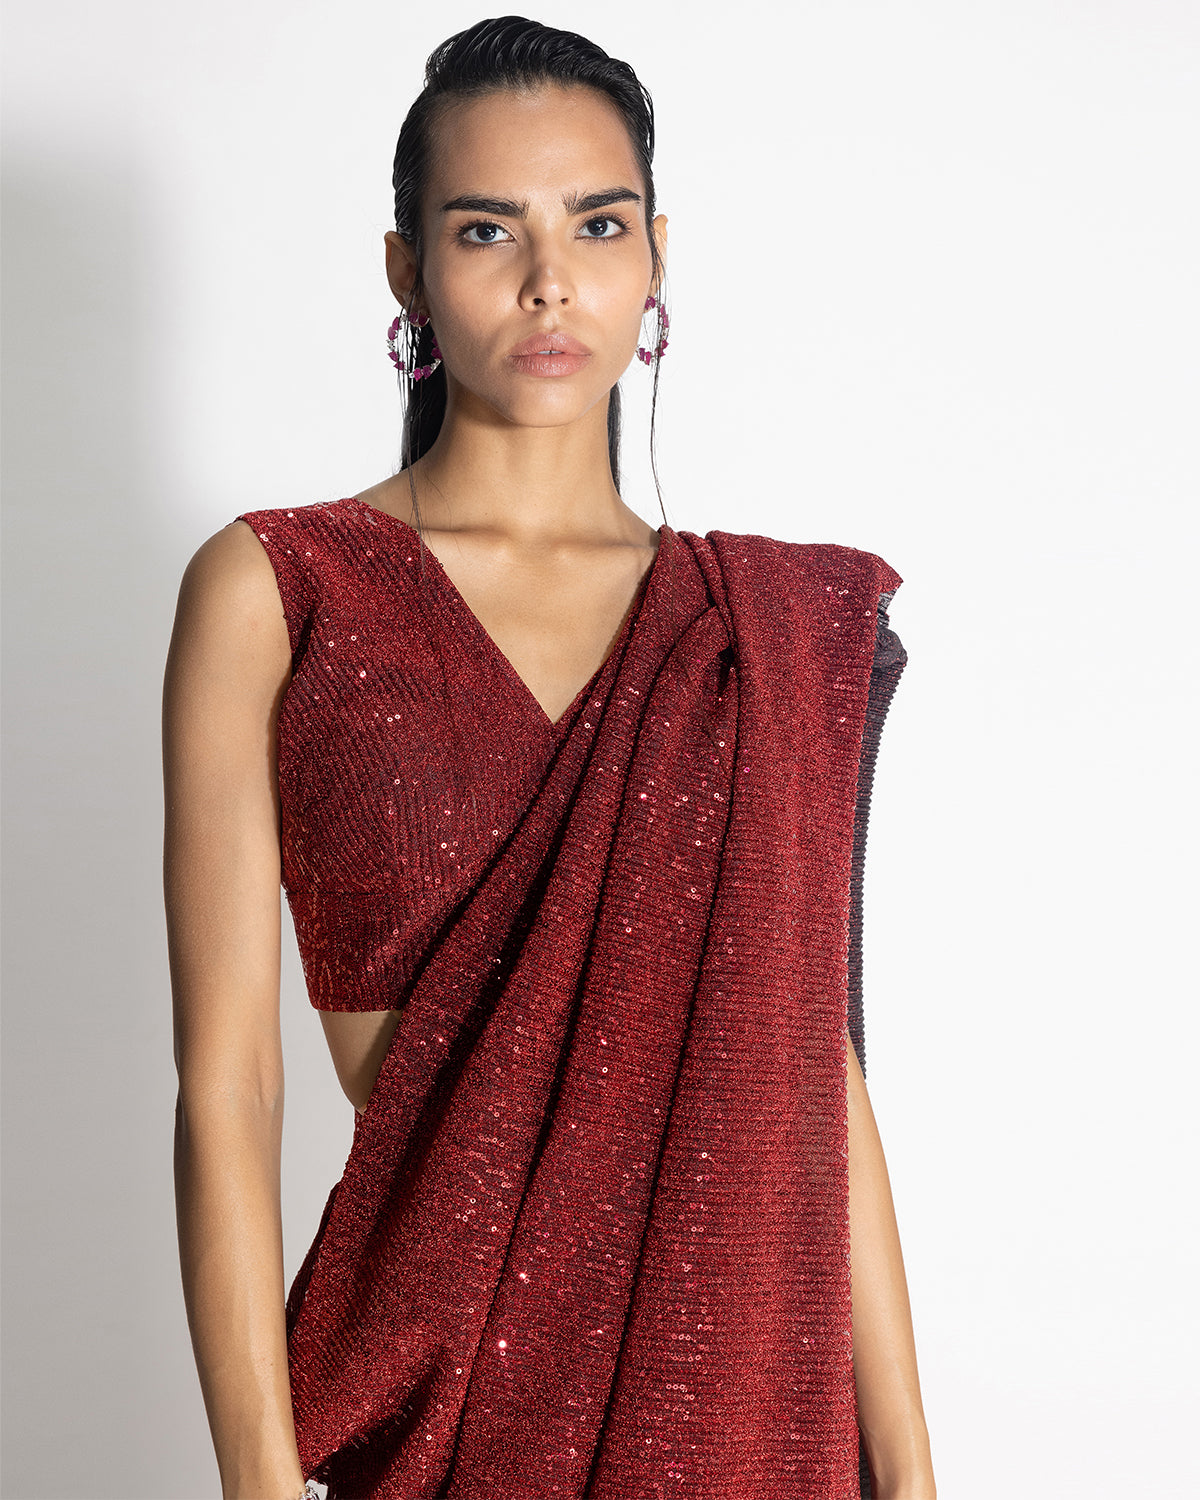 Sequins Sari With Top